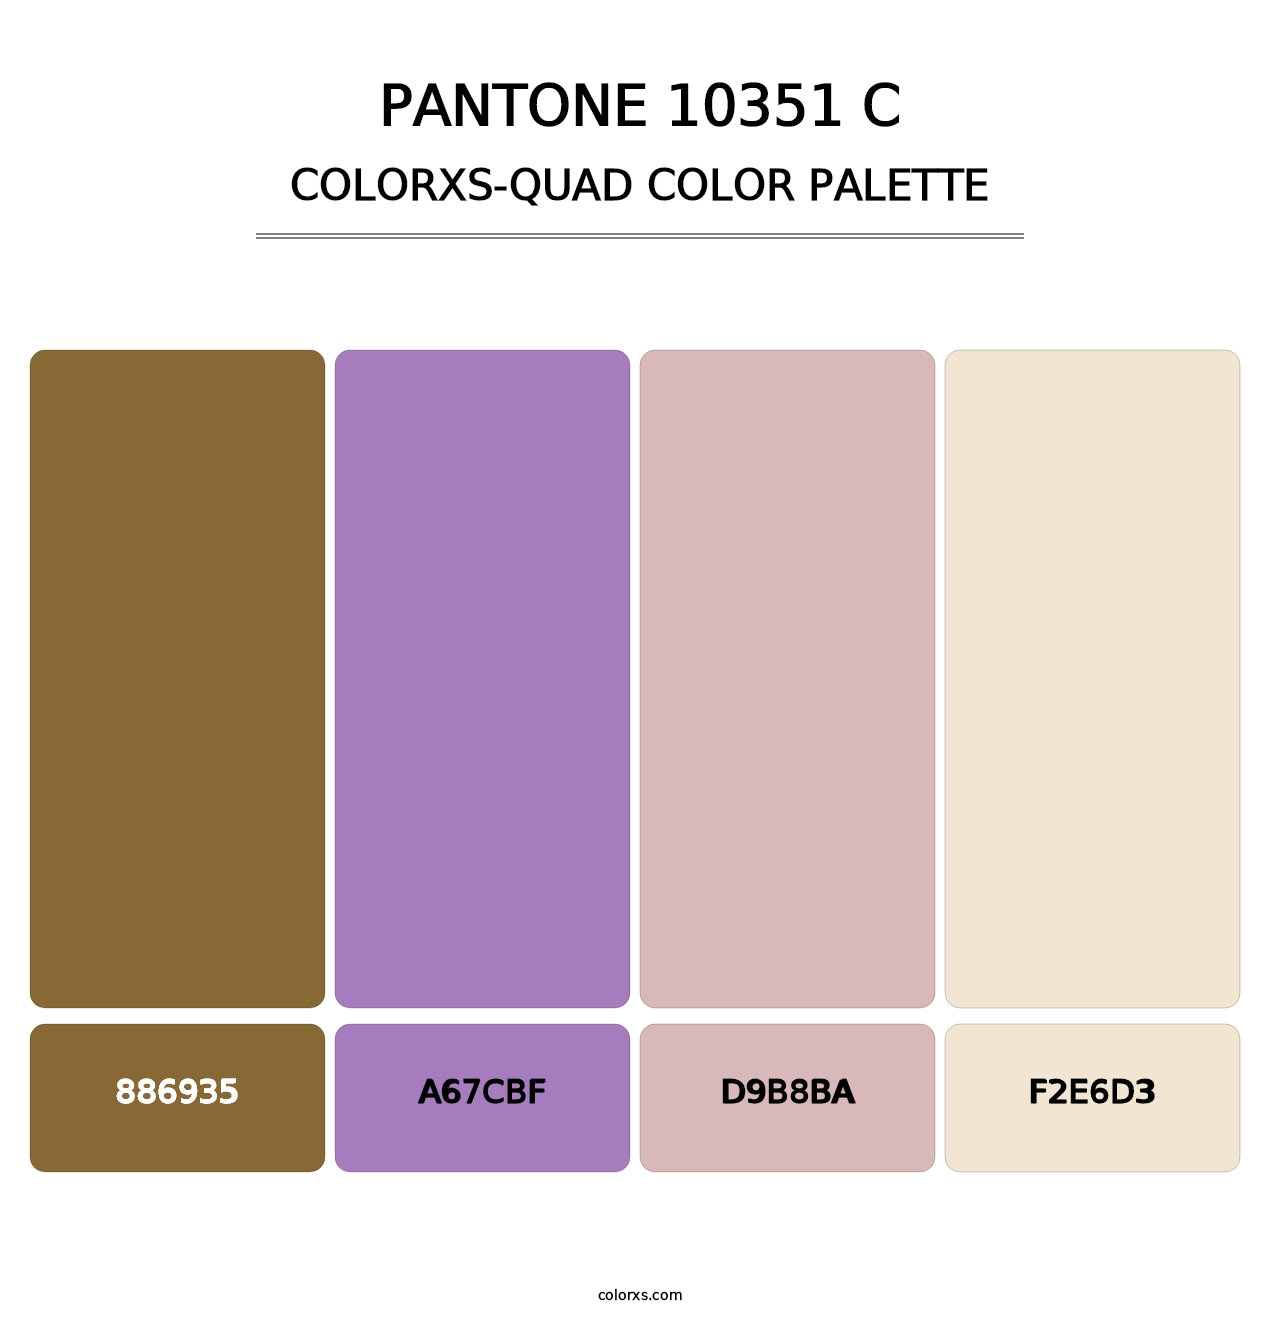 PANTONE 10351 C - Colorxs Quad Palette